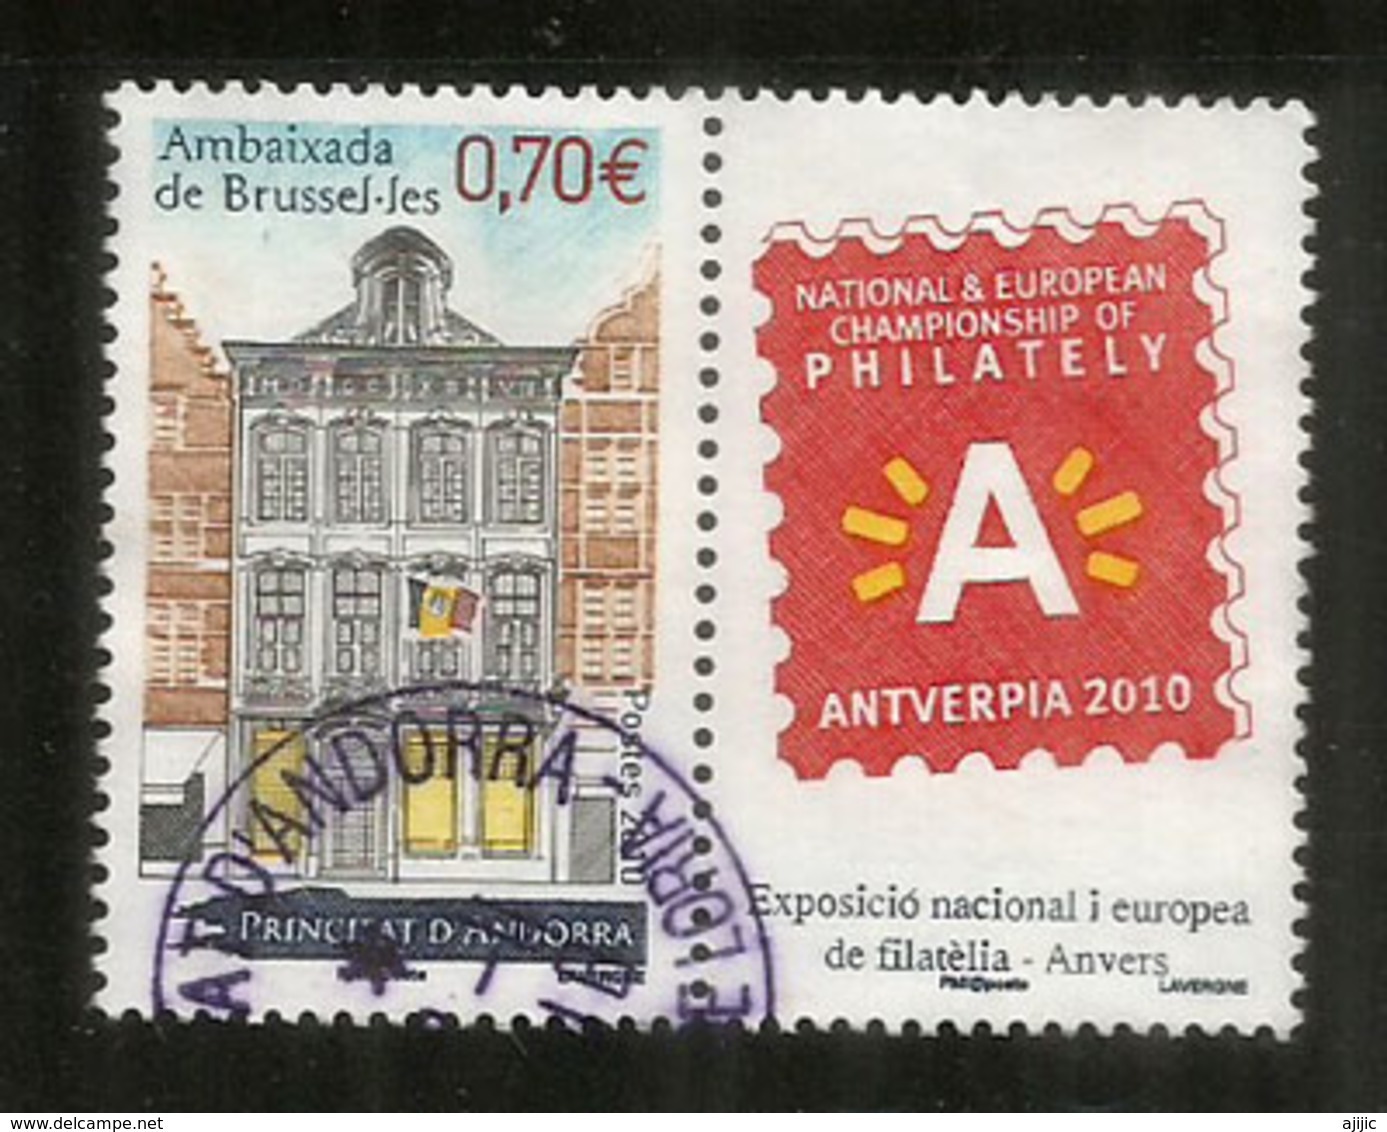 Ambassade D'Andorre à Bruxelles, Un Timbre Oblitéré Avec Vignette Antverpia 2010, 1 ère Qualité - Gebraucht